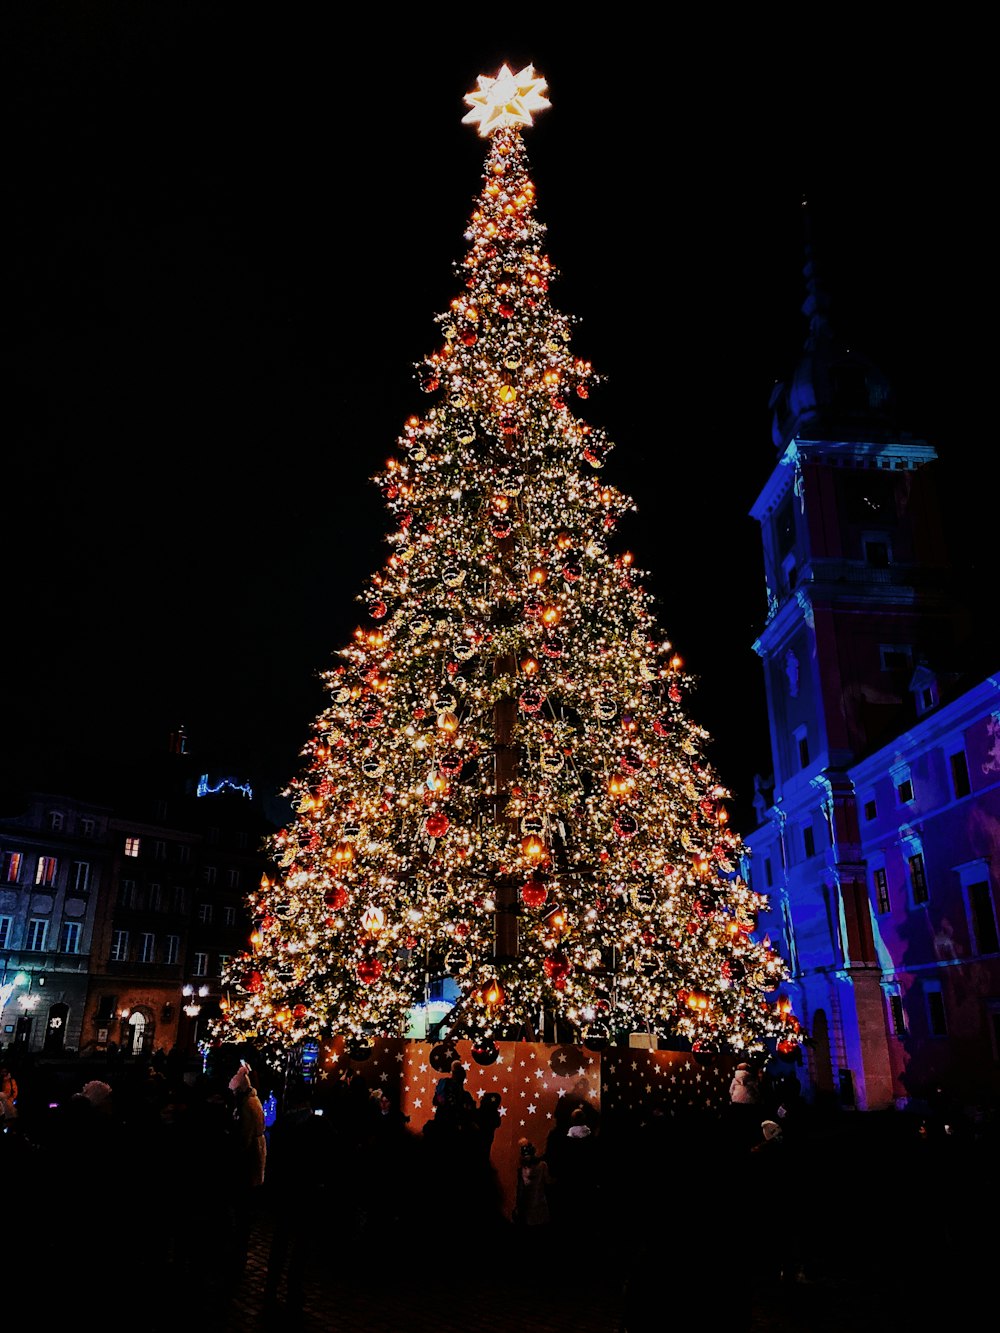 personnes marchant dans la rue près de l’arbre de Noël avec des guirlandes lumineuses pendant la nuit